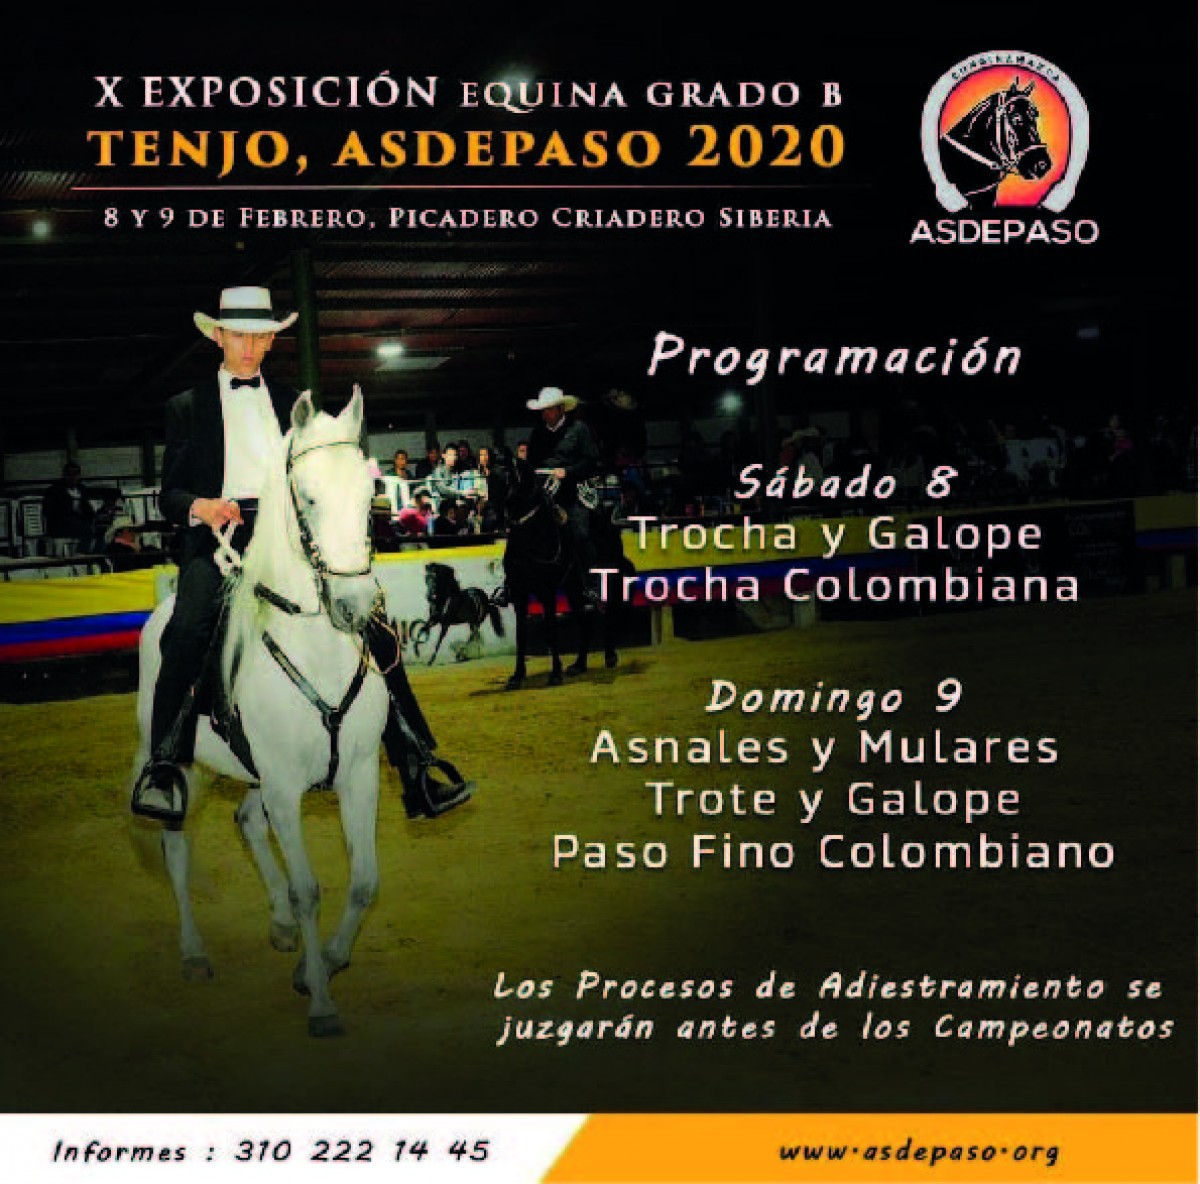 X Exposición Equina Grado B, Tenjo, Asdepaso 2020, 8 y 9 de febrero